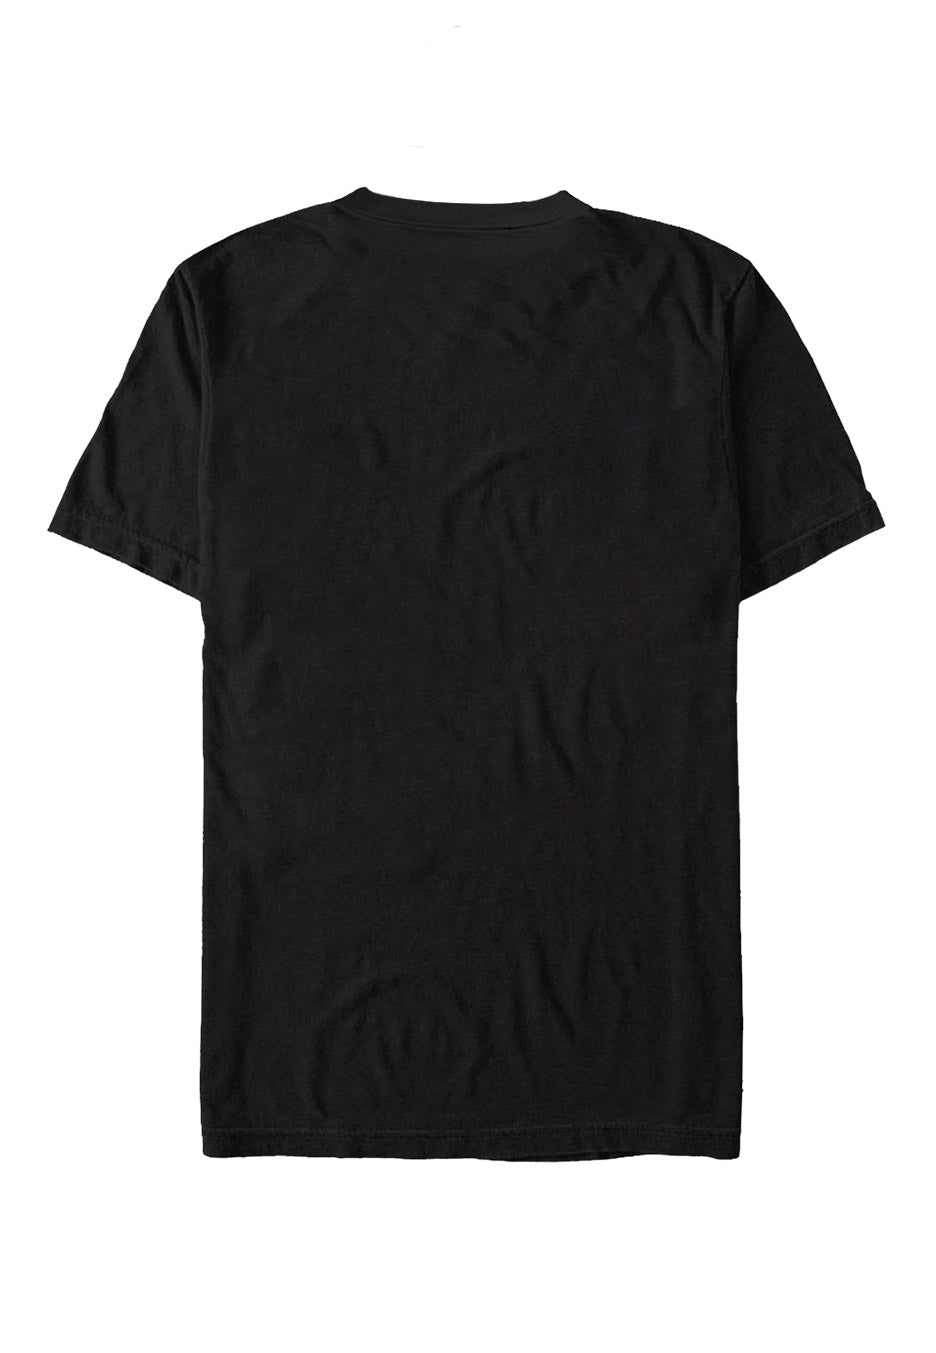 Slipknot - Band Frame - T-Shirt